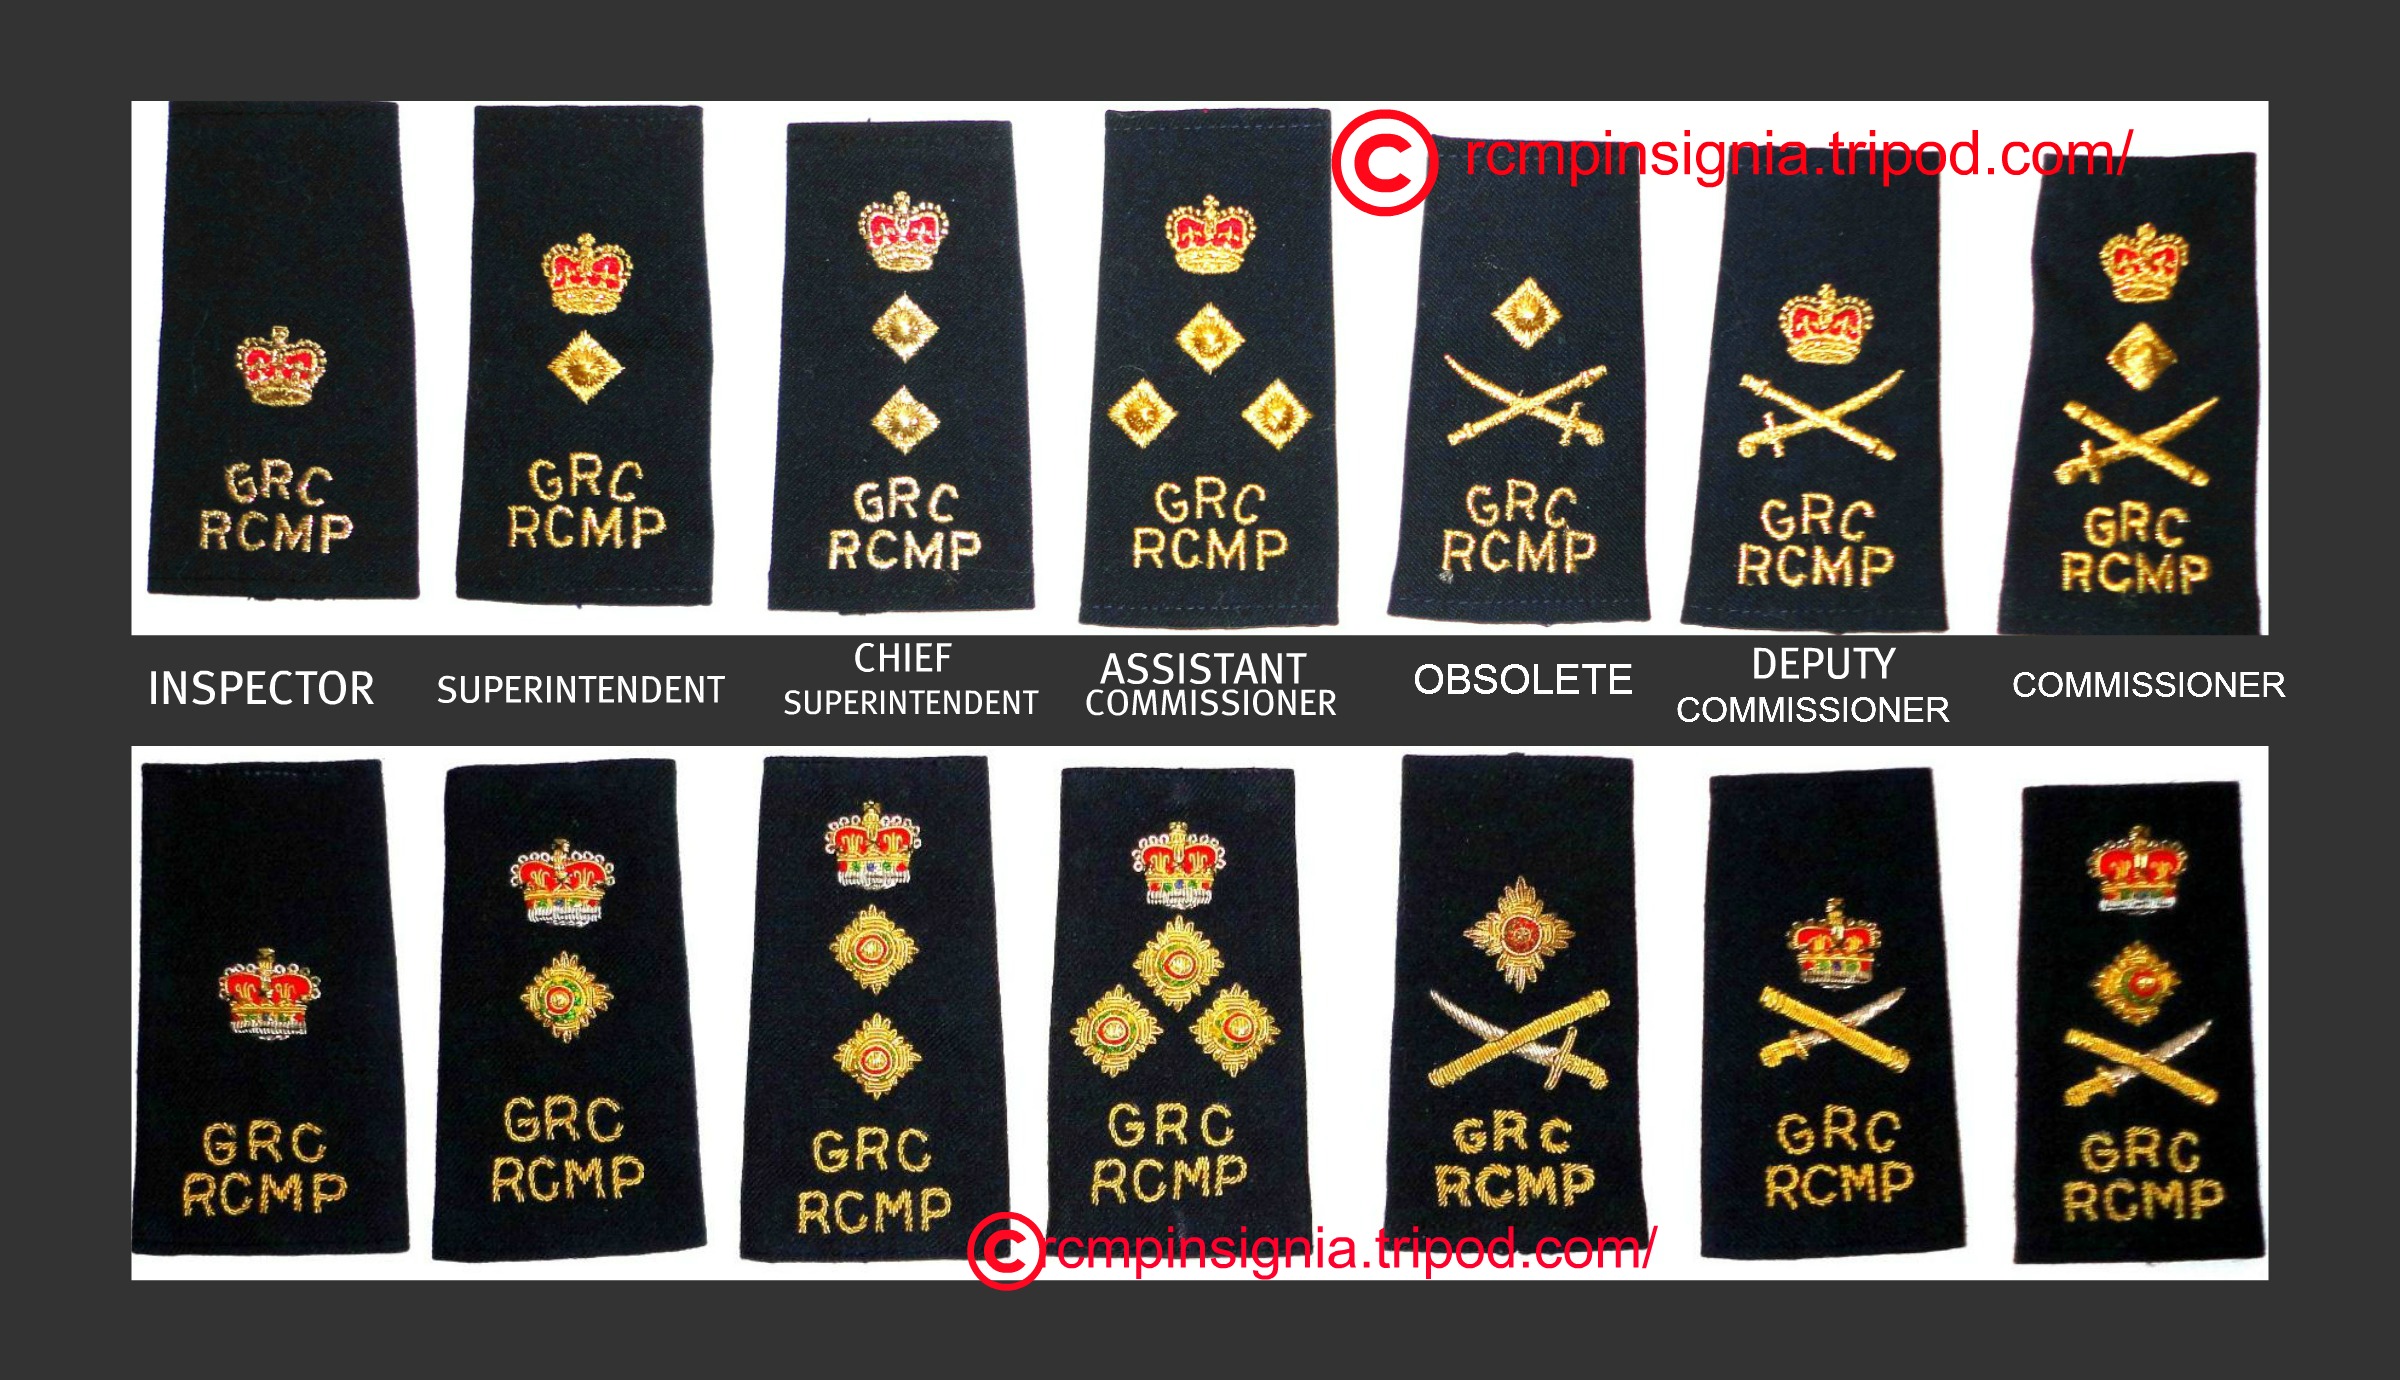 RCMP officer shoulder boards.jpg?1392580